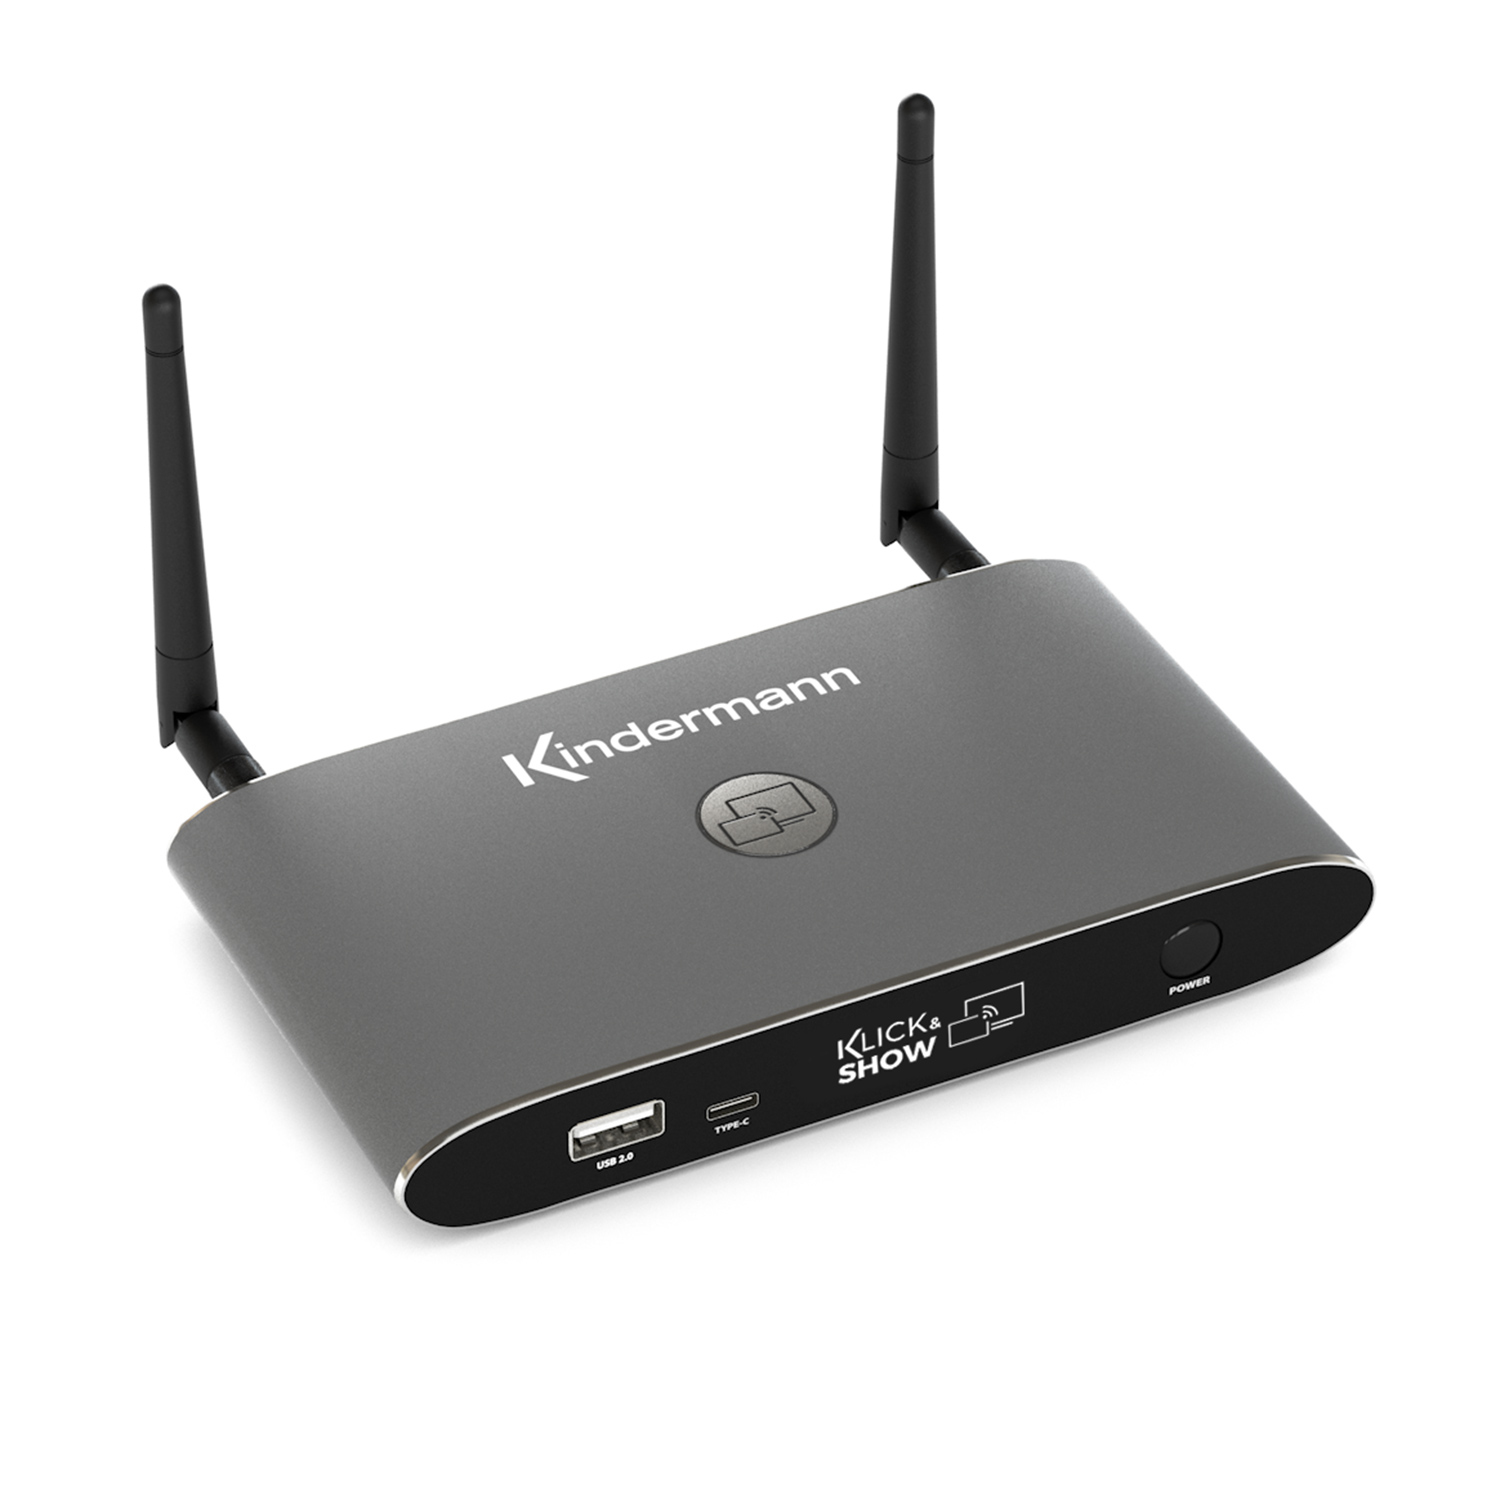 Kindermann KLICK & SHOW K-WM, Wireless Presentation System for